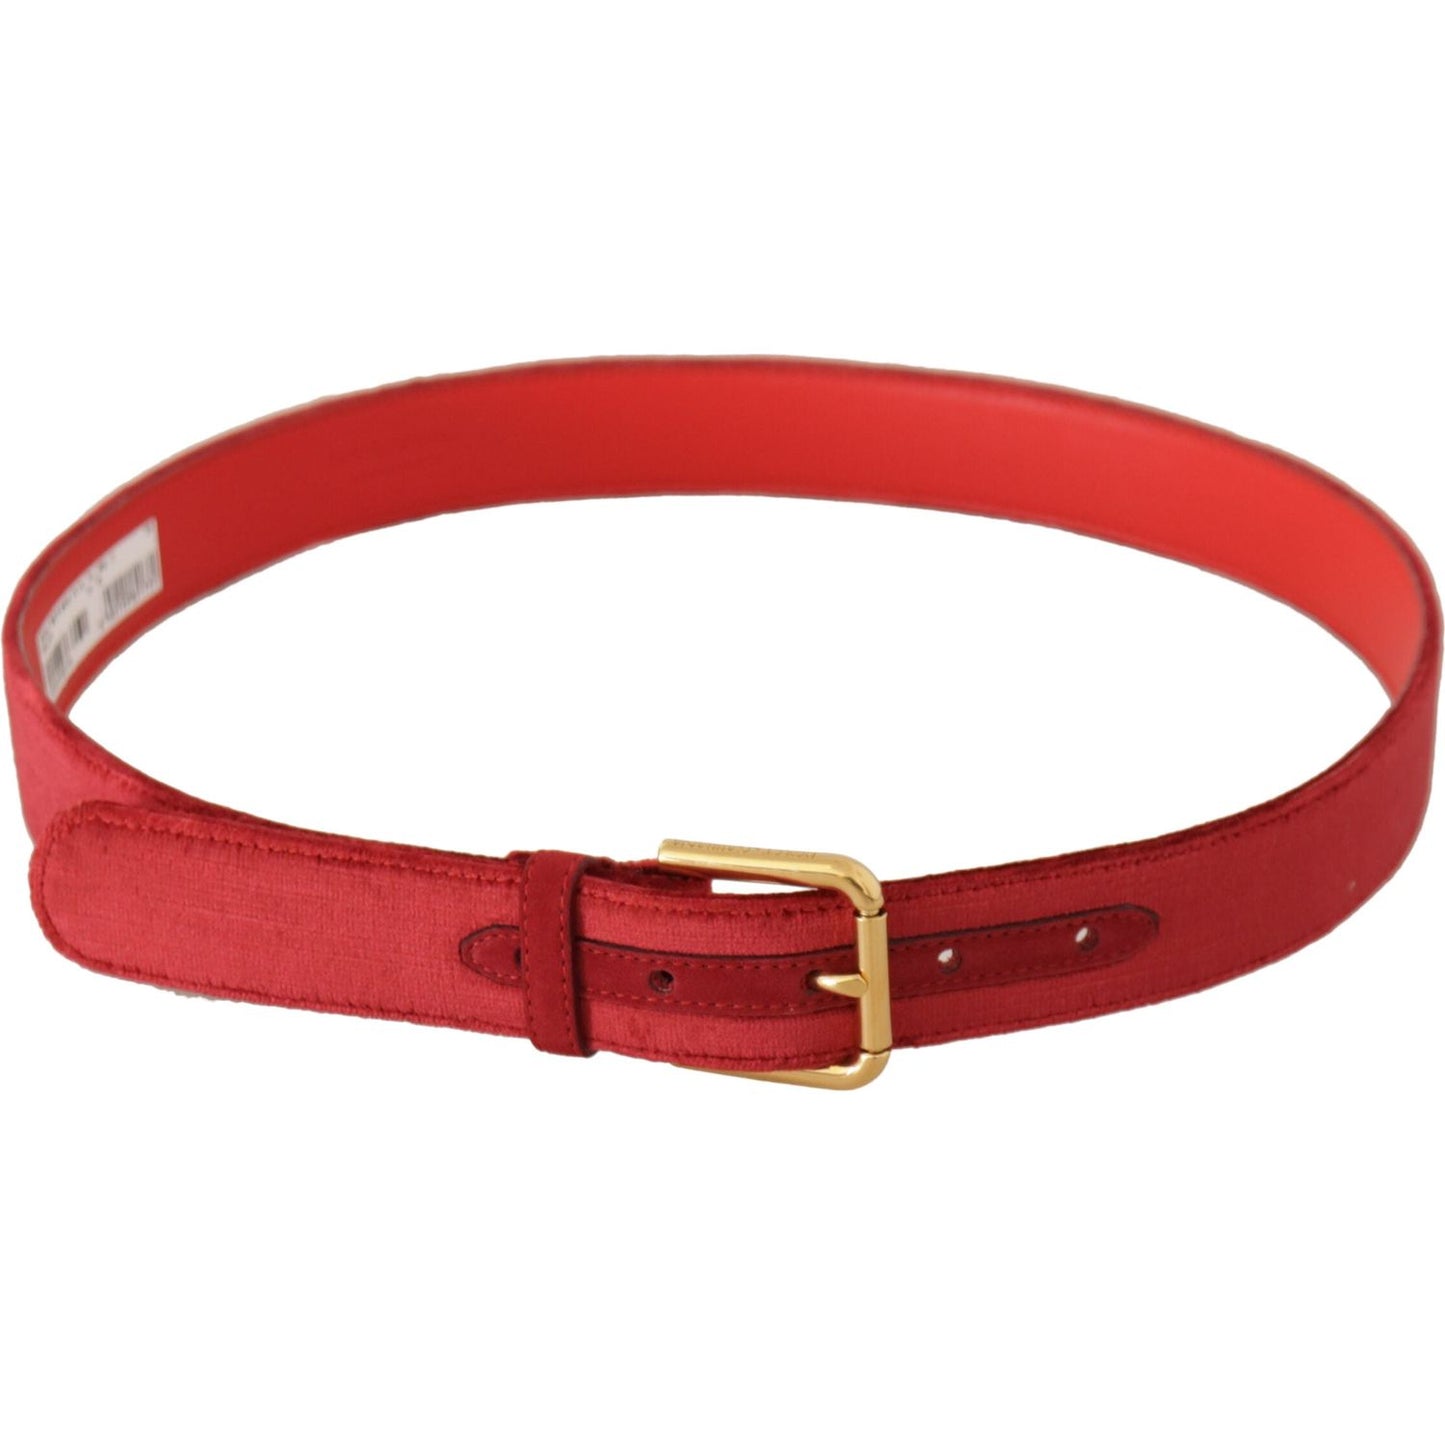 Dolce & Gabbana Elegant Red Suede Designer Belt red-velvet-gold-logo-engraved-metal-buckle-belt IMG_0486-scaled-22035956-a57.jpg